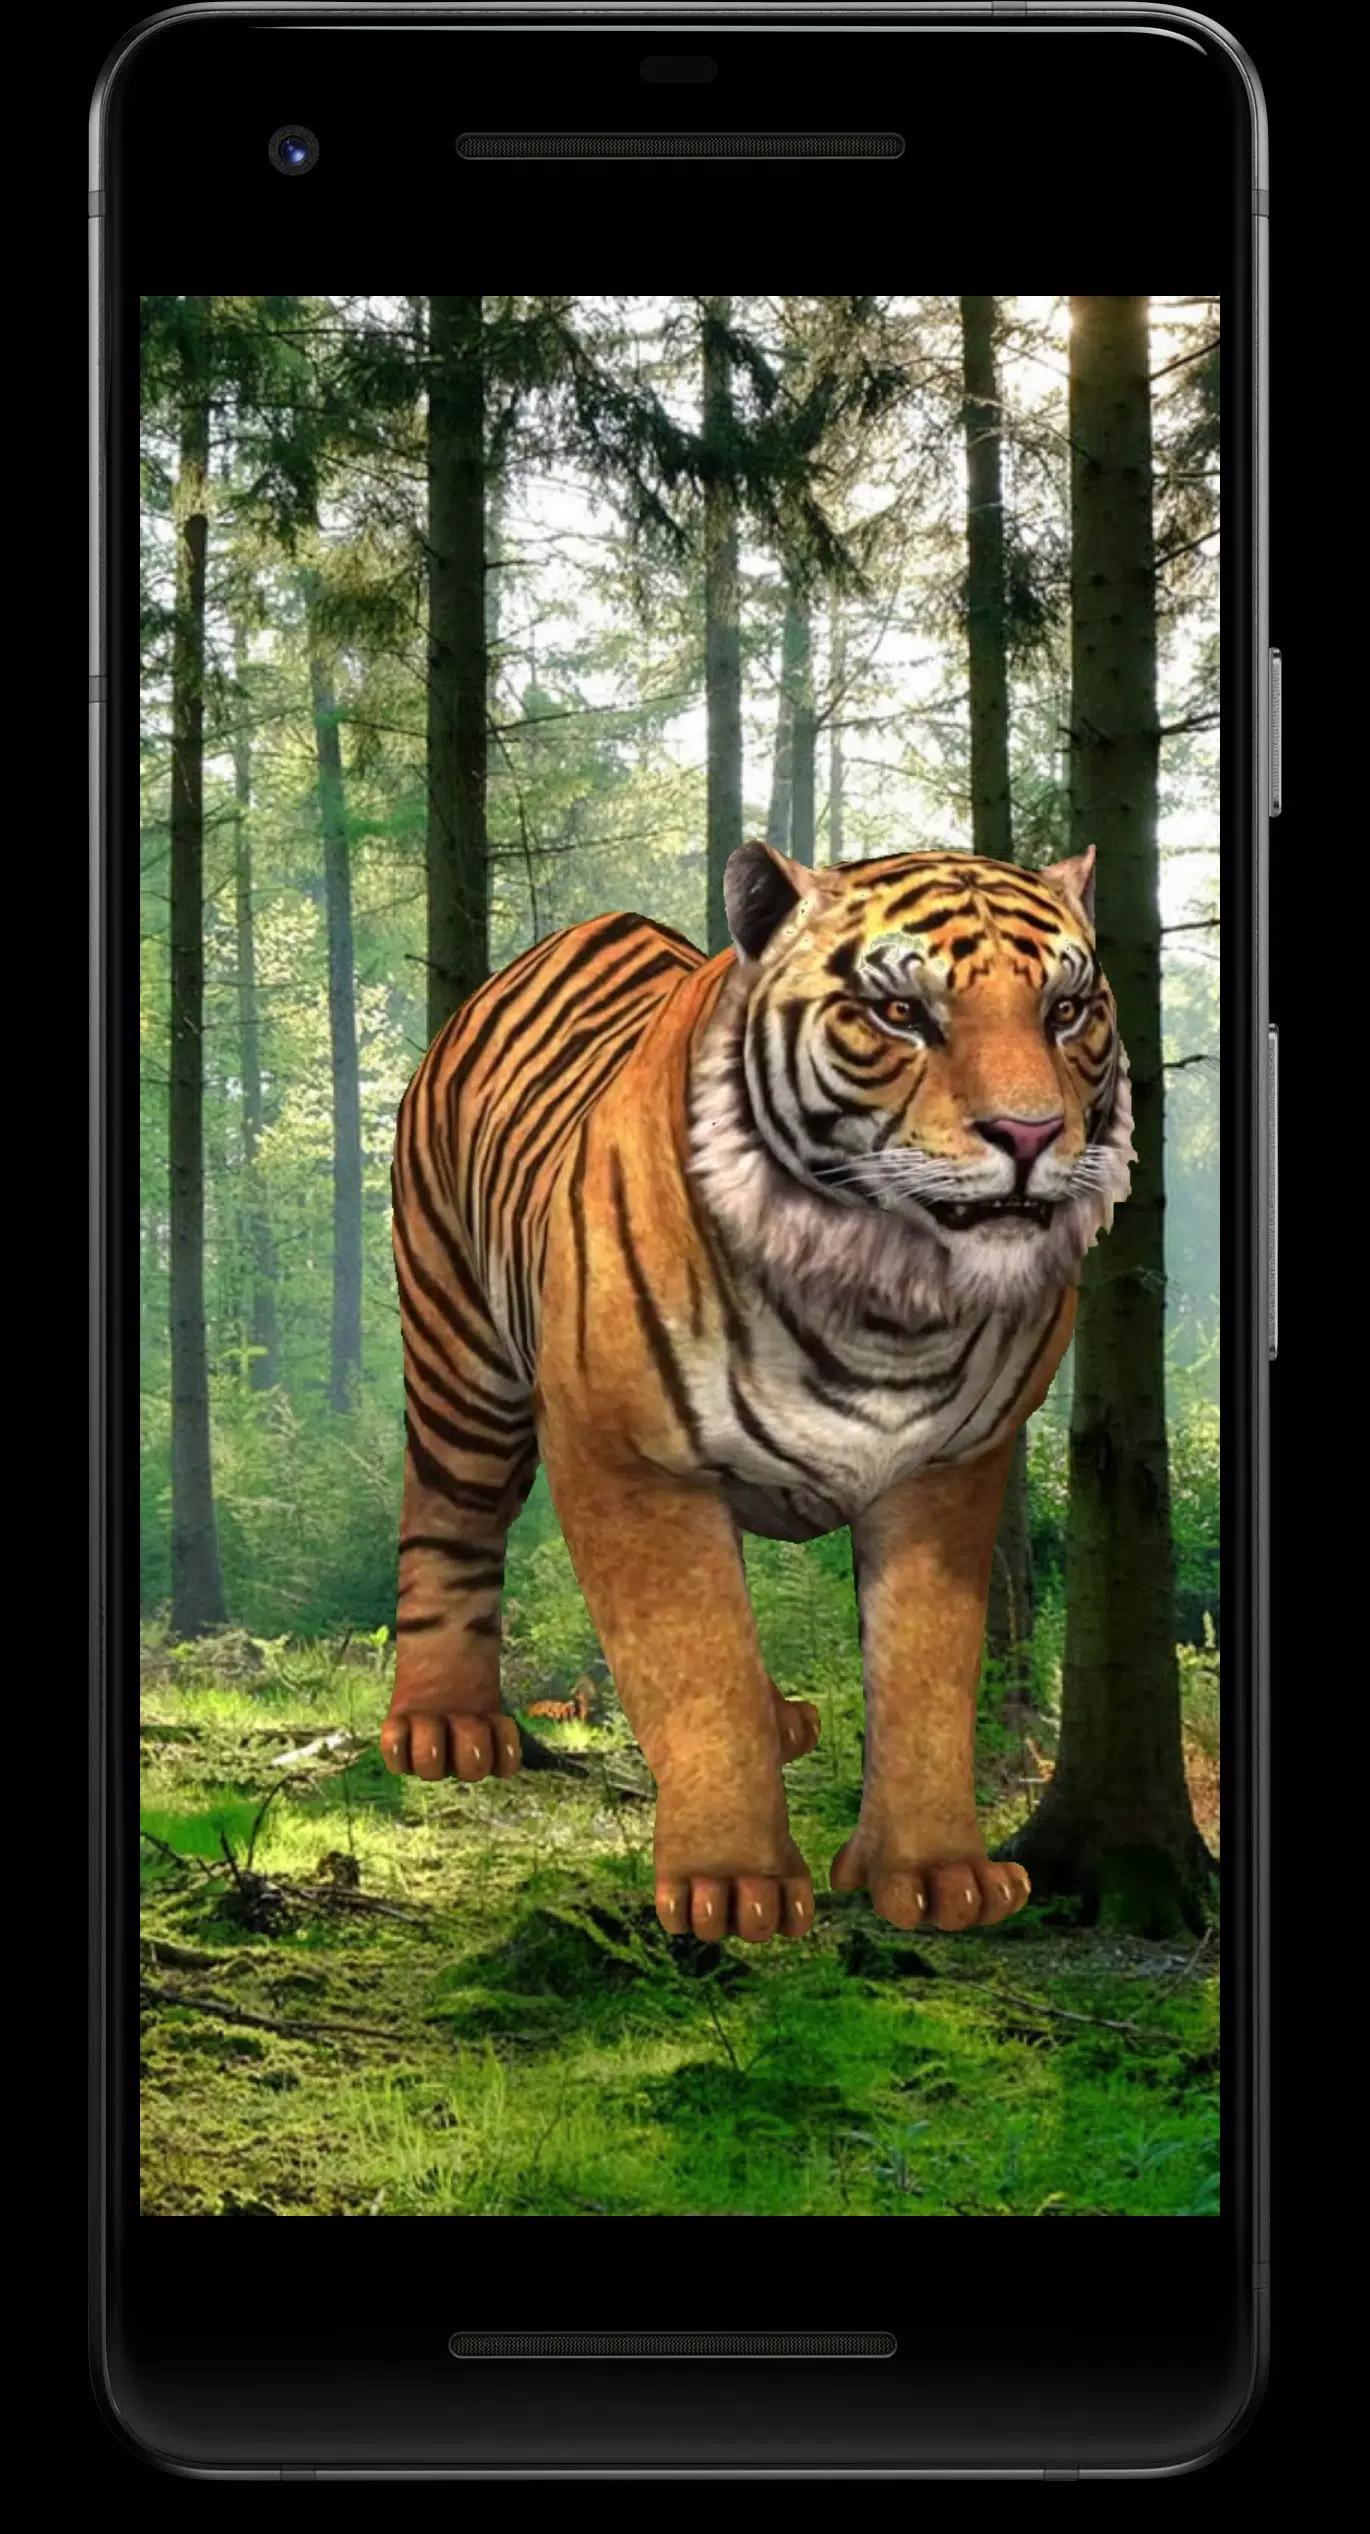 Hình nền động Tiger 3D cho Android: Hãy trải nghiệm những hình ảnh động vật hoang dã tuyệt đẹp trên điện thoại của bạn với hình nền động Tiger 3D cho Android. Tận hưởng sự hoang dã và uy nghi của loài hổ, và đánh thức bản năng phiêu lưu của bạn. Hãy cùng khám phá thế giới đó qua những hình ảnh đẹp mắt của Tiger 3D!